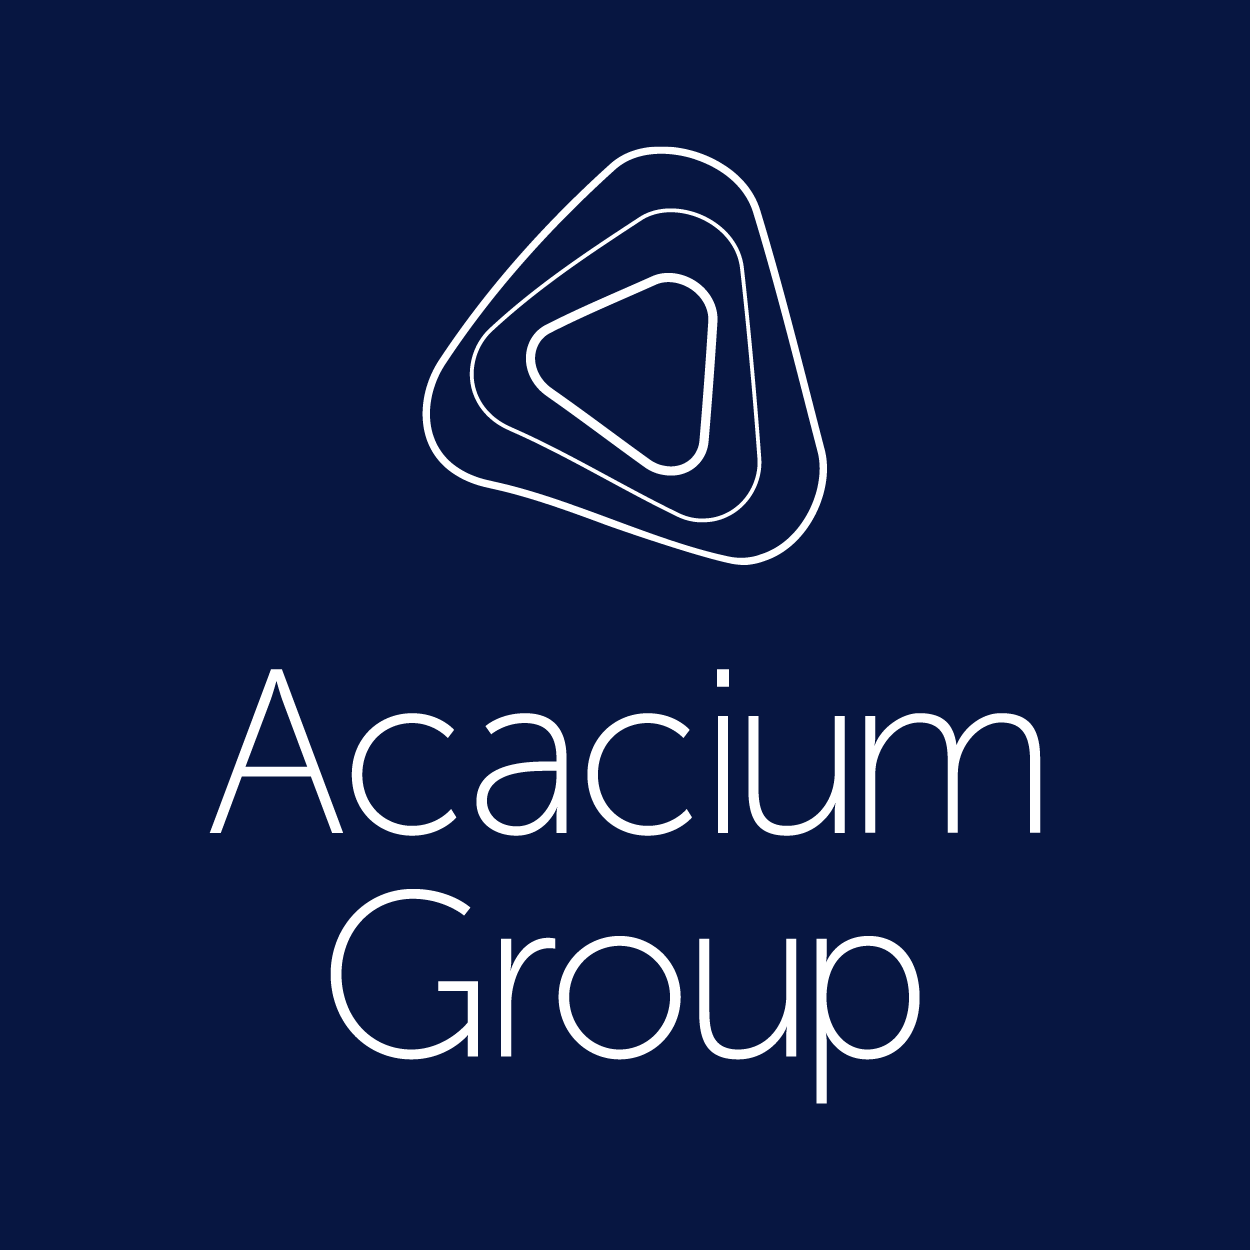 Arcacium Group